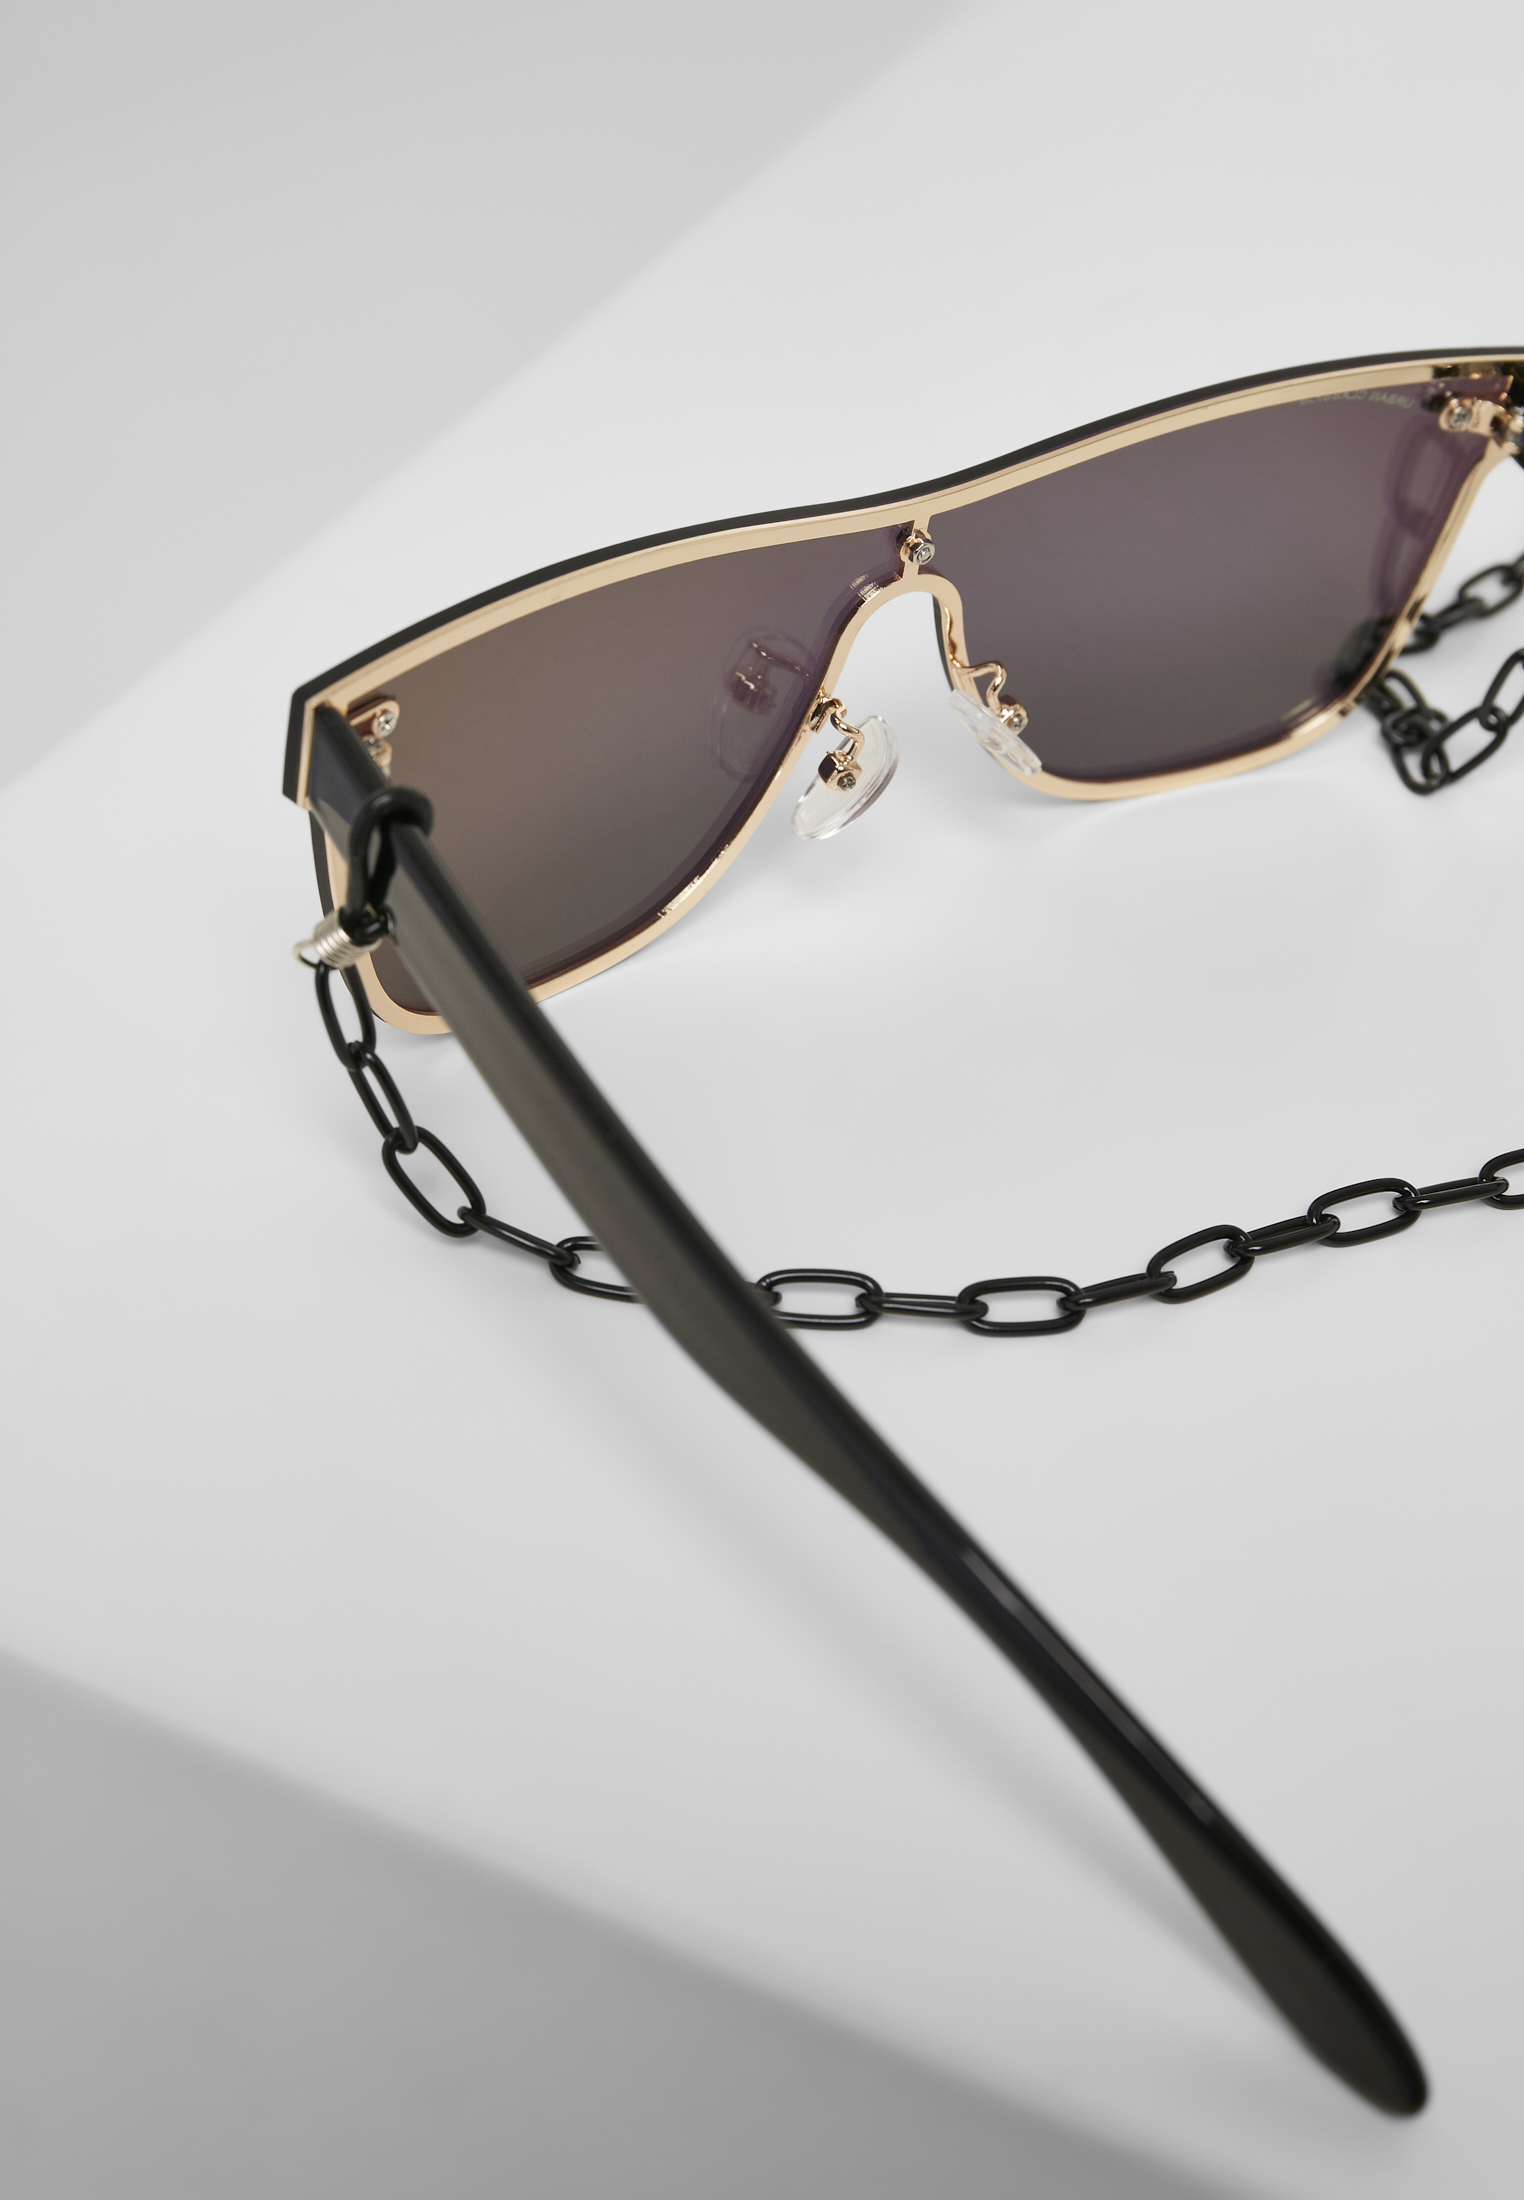 Sonnenbrillen 103 Chain Sunglasses in Farbe black/gold mirror